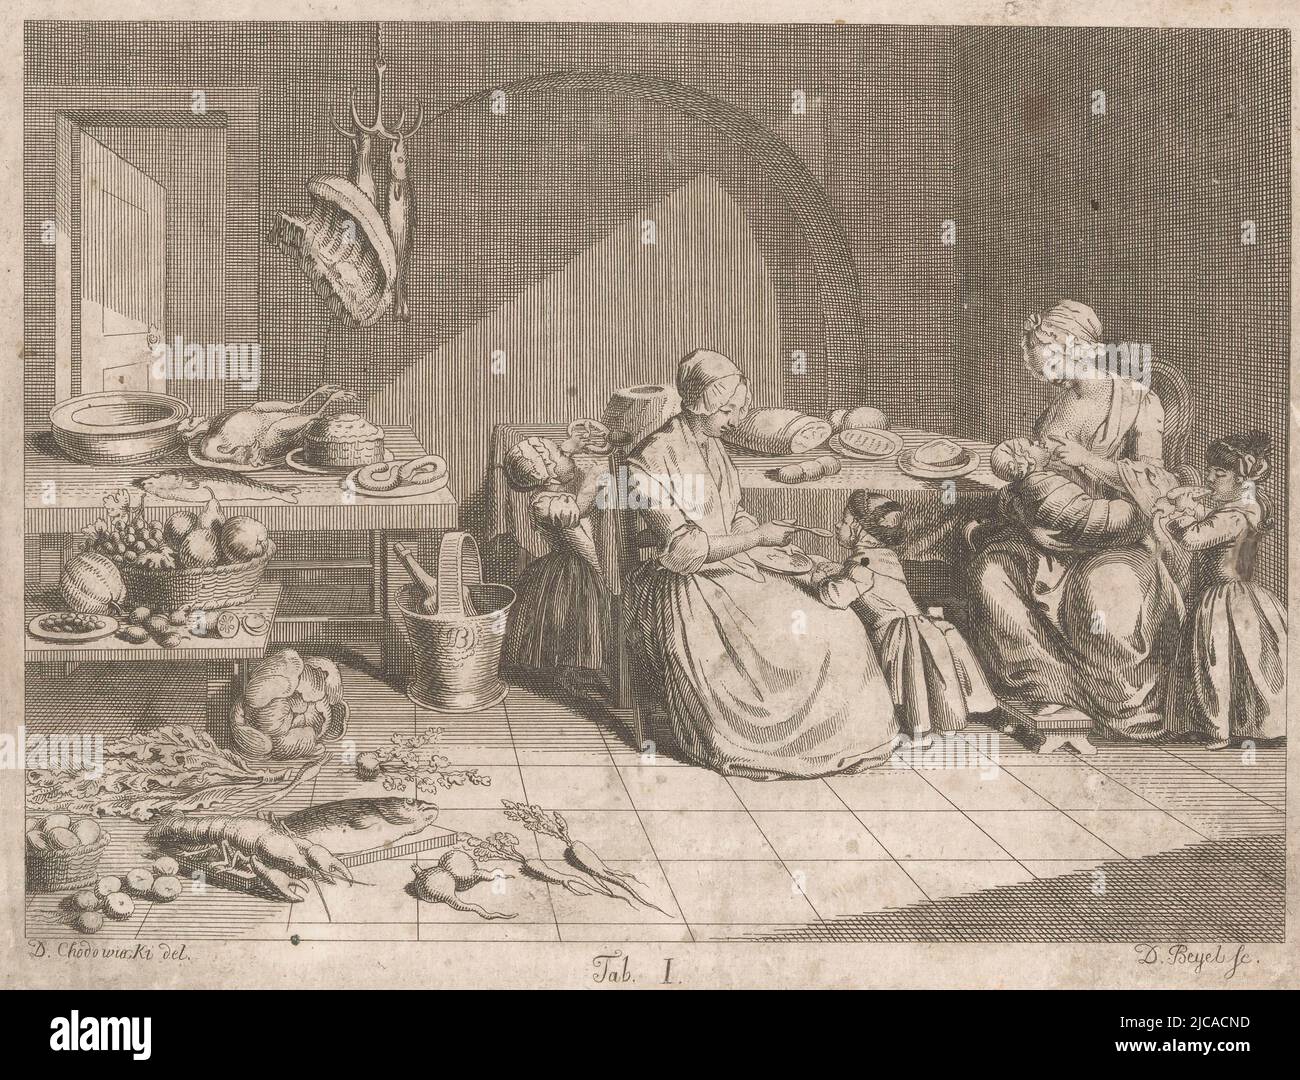 Numéro bas centre: Onglet I, deux femmes avec des enfants dans une cuisine remplie de nourriture, imprimeur: Daniel Beyel, (mentionné sur l'objet), Johann David Schleuen (I), (peut-être), dessinateur intermédiaire: Daniel Nikolaus Chodowiecki, (mentionné sur l'objet), München, (peut-être), 1785 - 1823, papier, gravure, h 184 mm - l 233 mm Banque D'Images